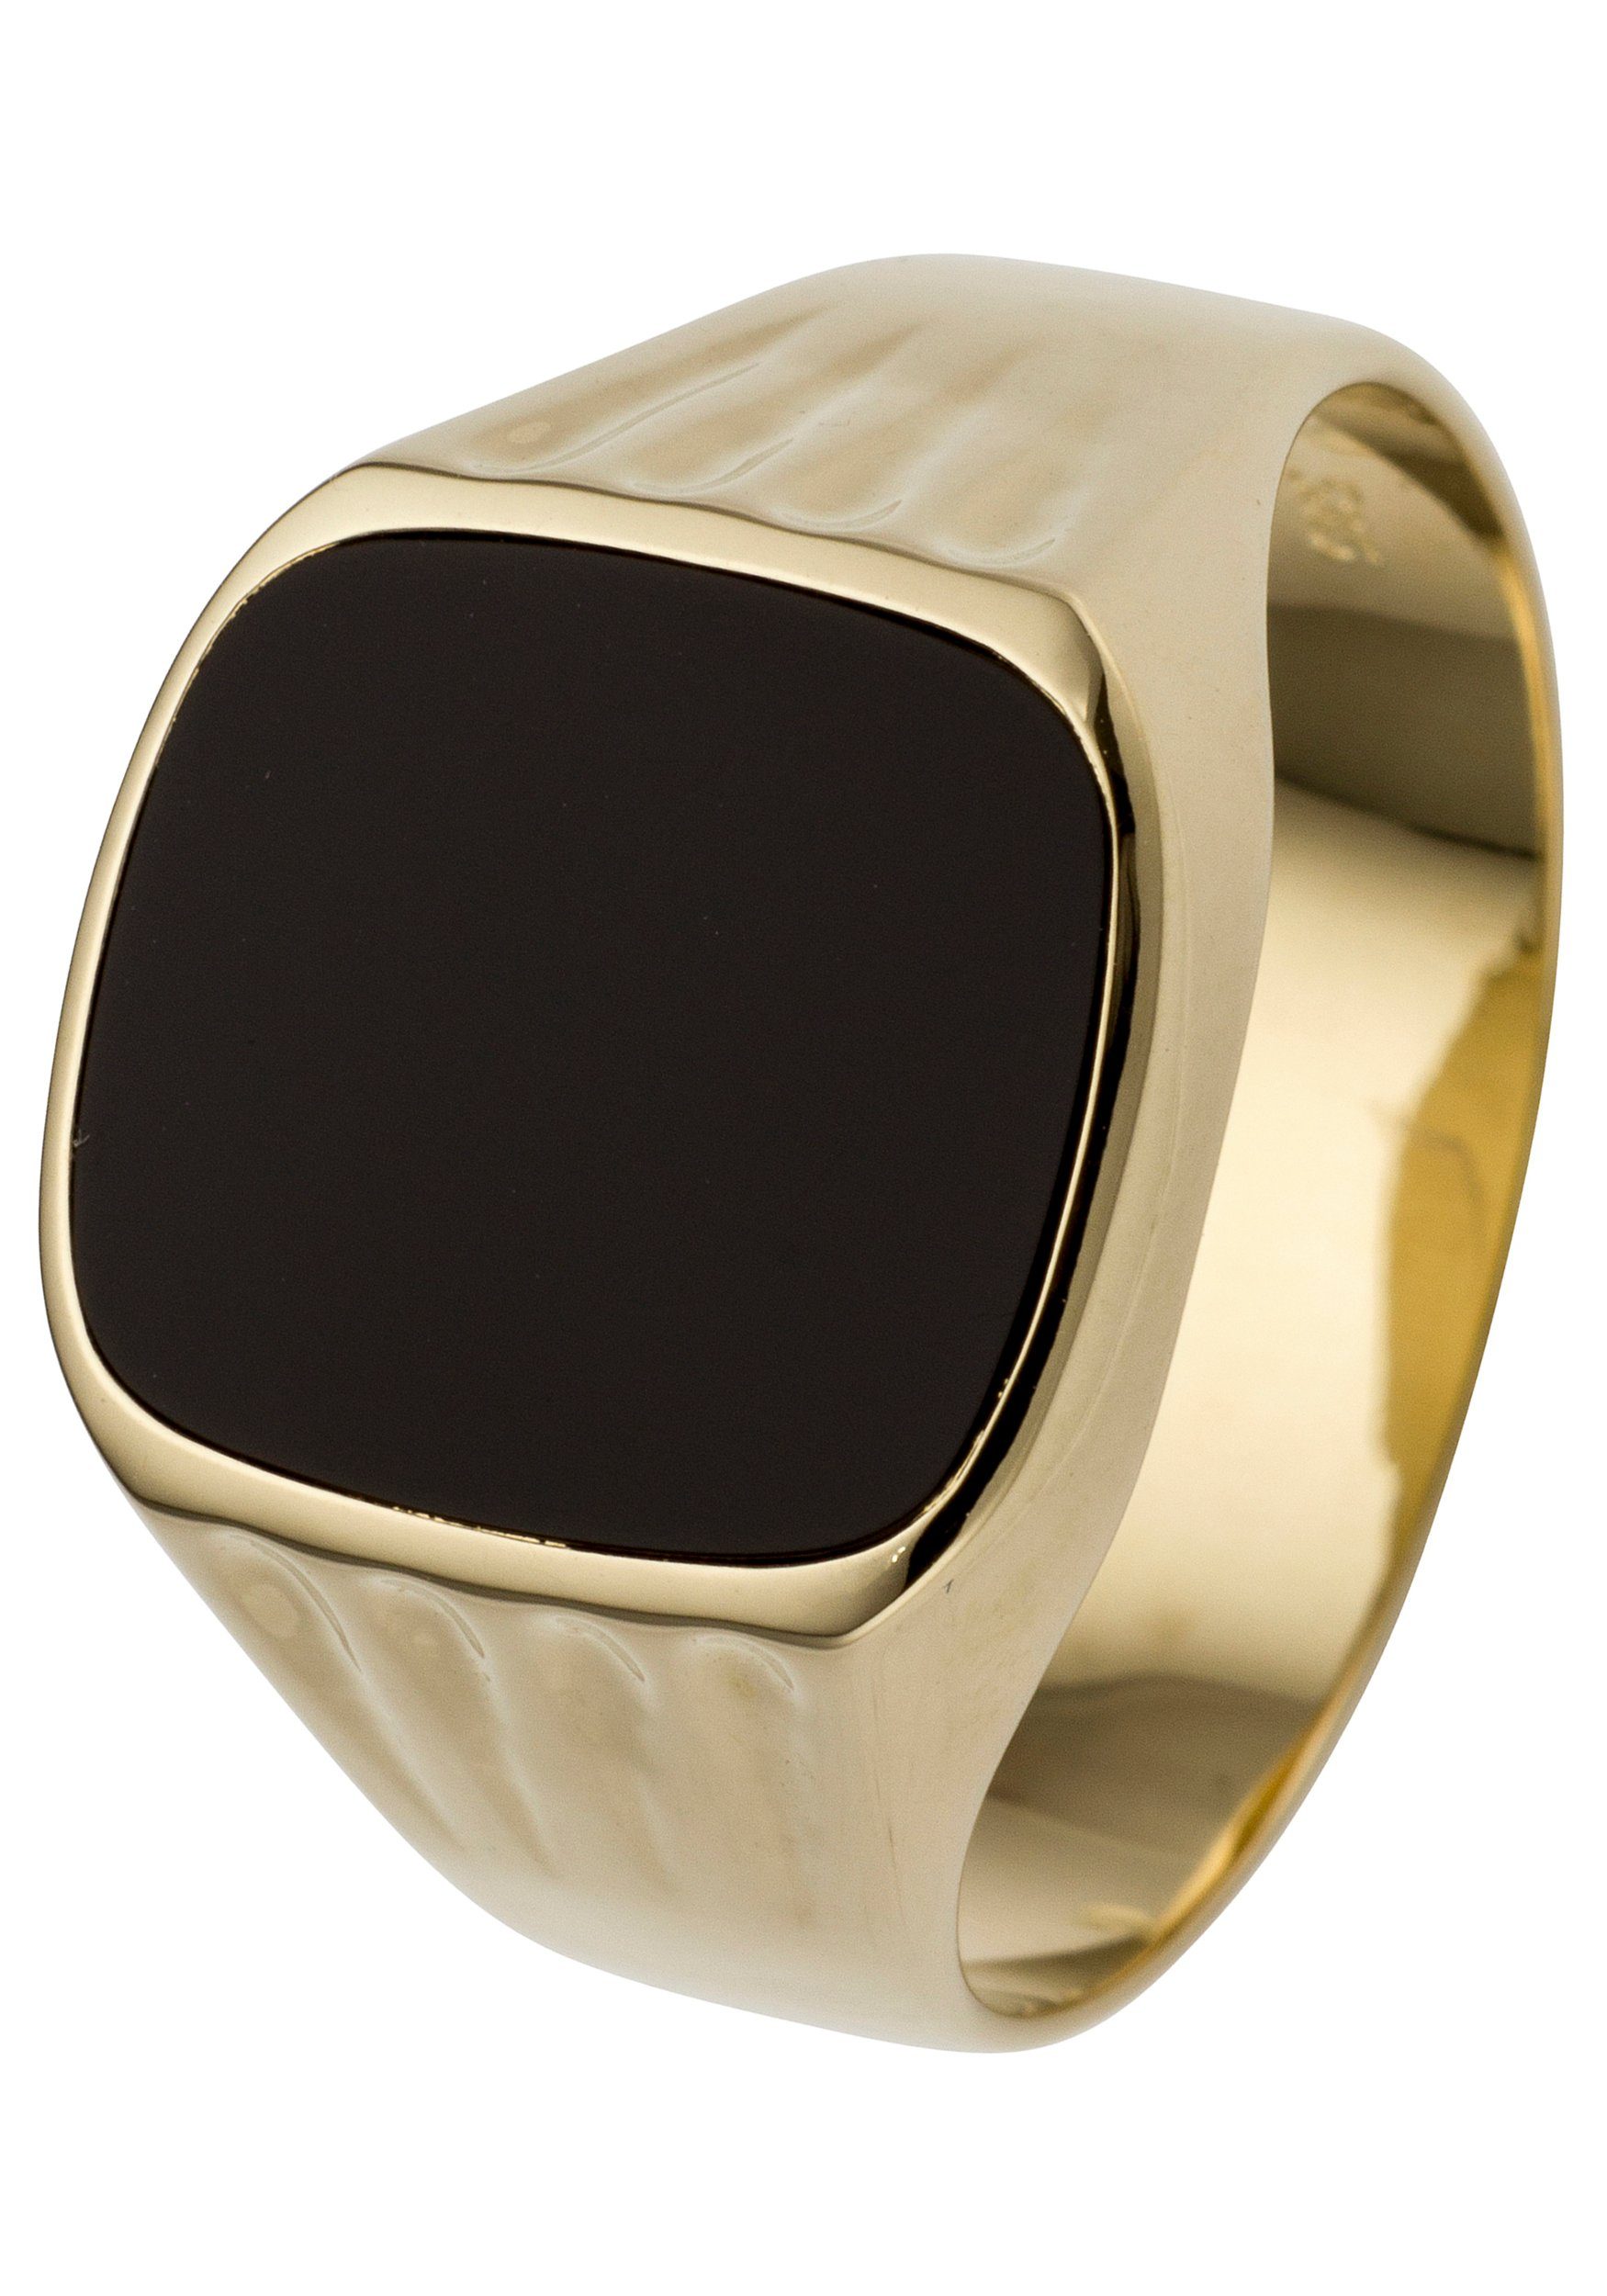 JOBO Fingerring, 585 Gold mit Onyx, Juwelierqualität der Marke JOBO online  kaufen | OTTO